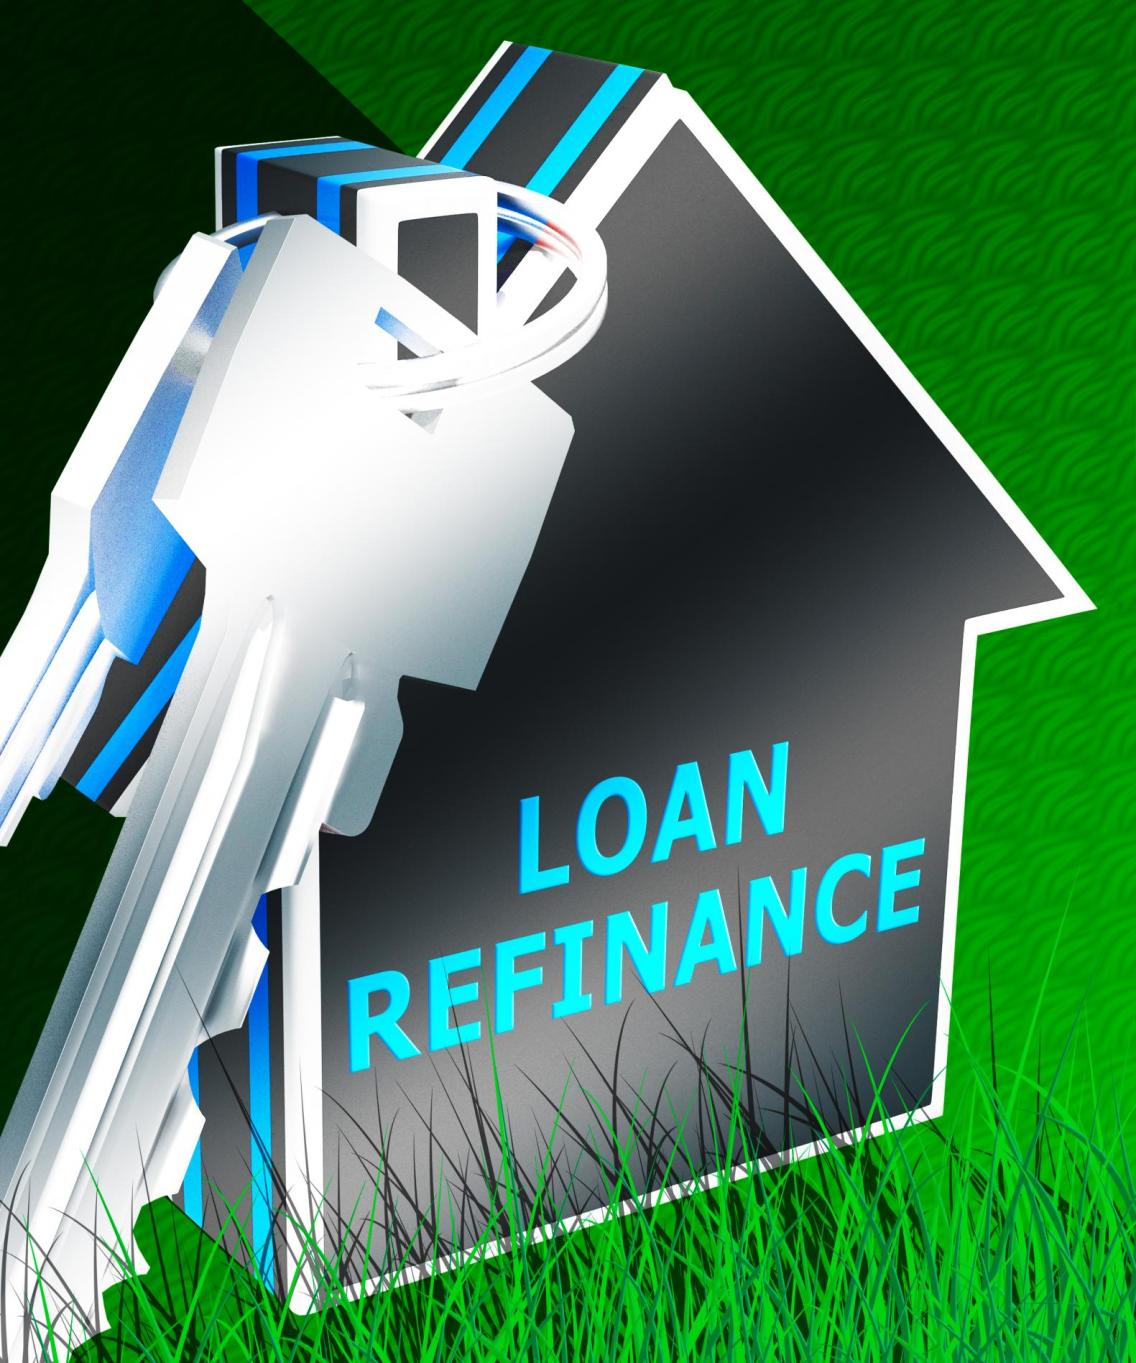 How Do I Choose the Best Refinancing Lender?